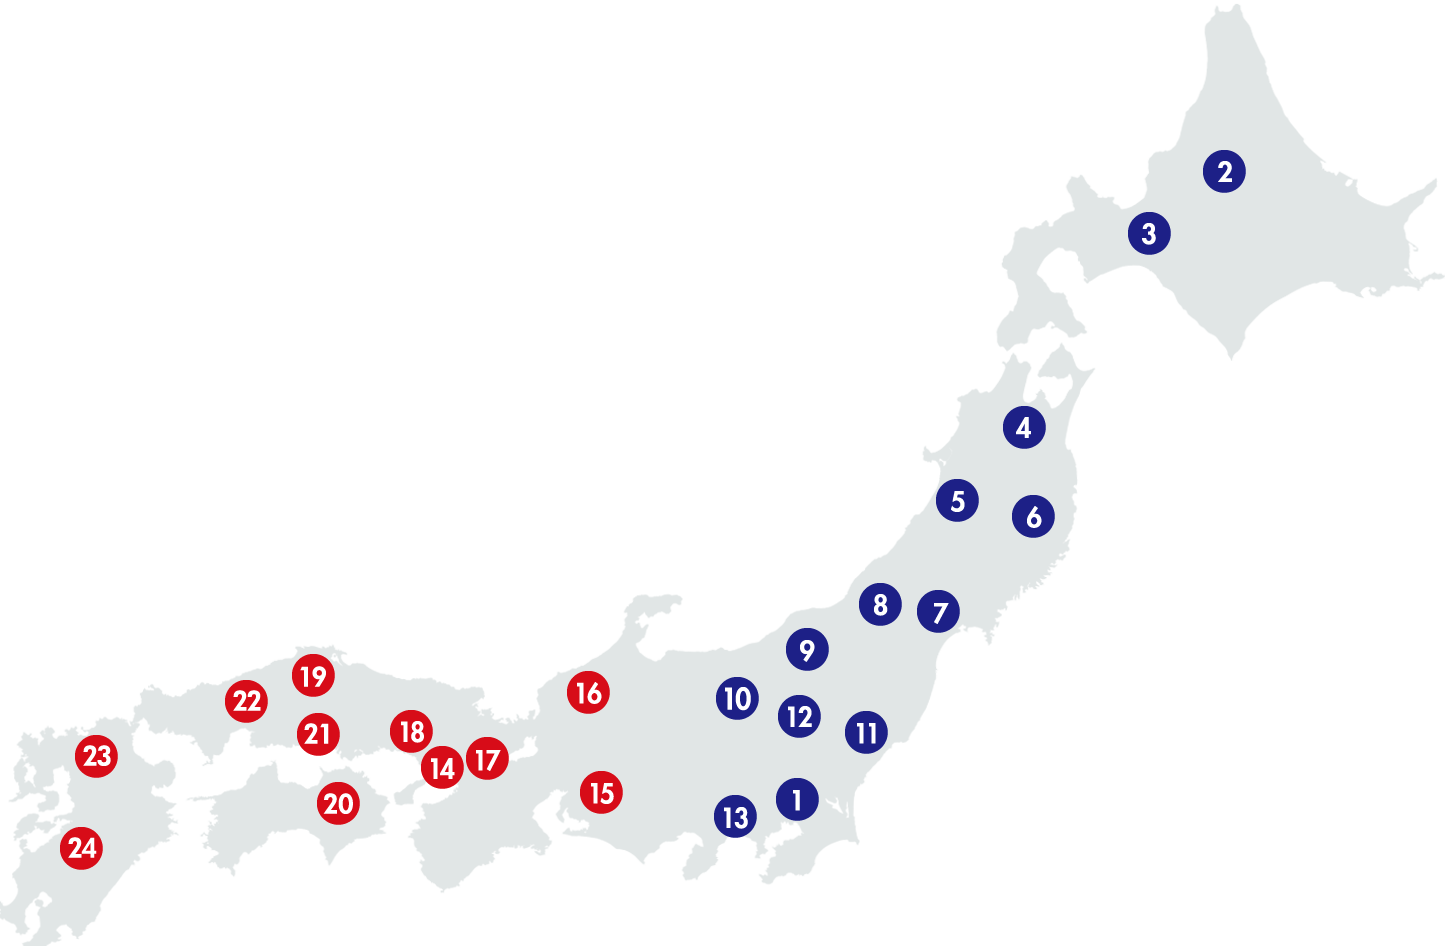 ネットワーク地図